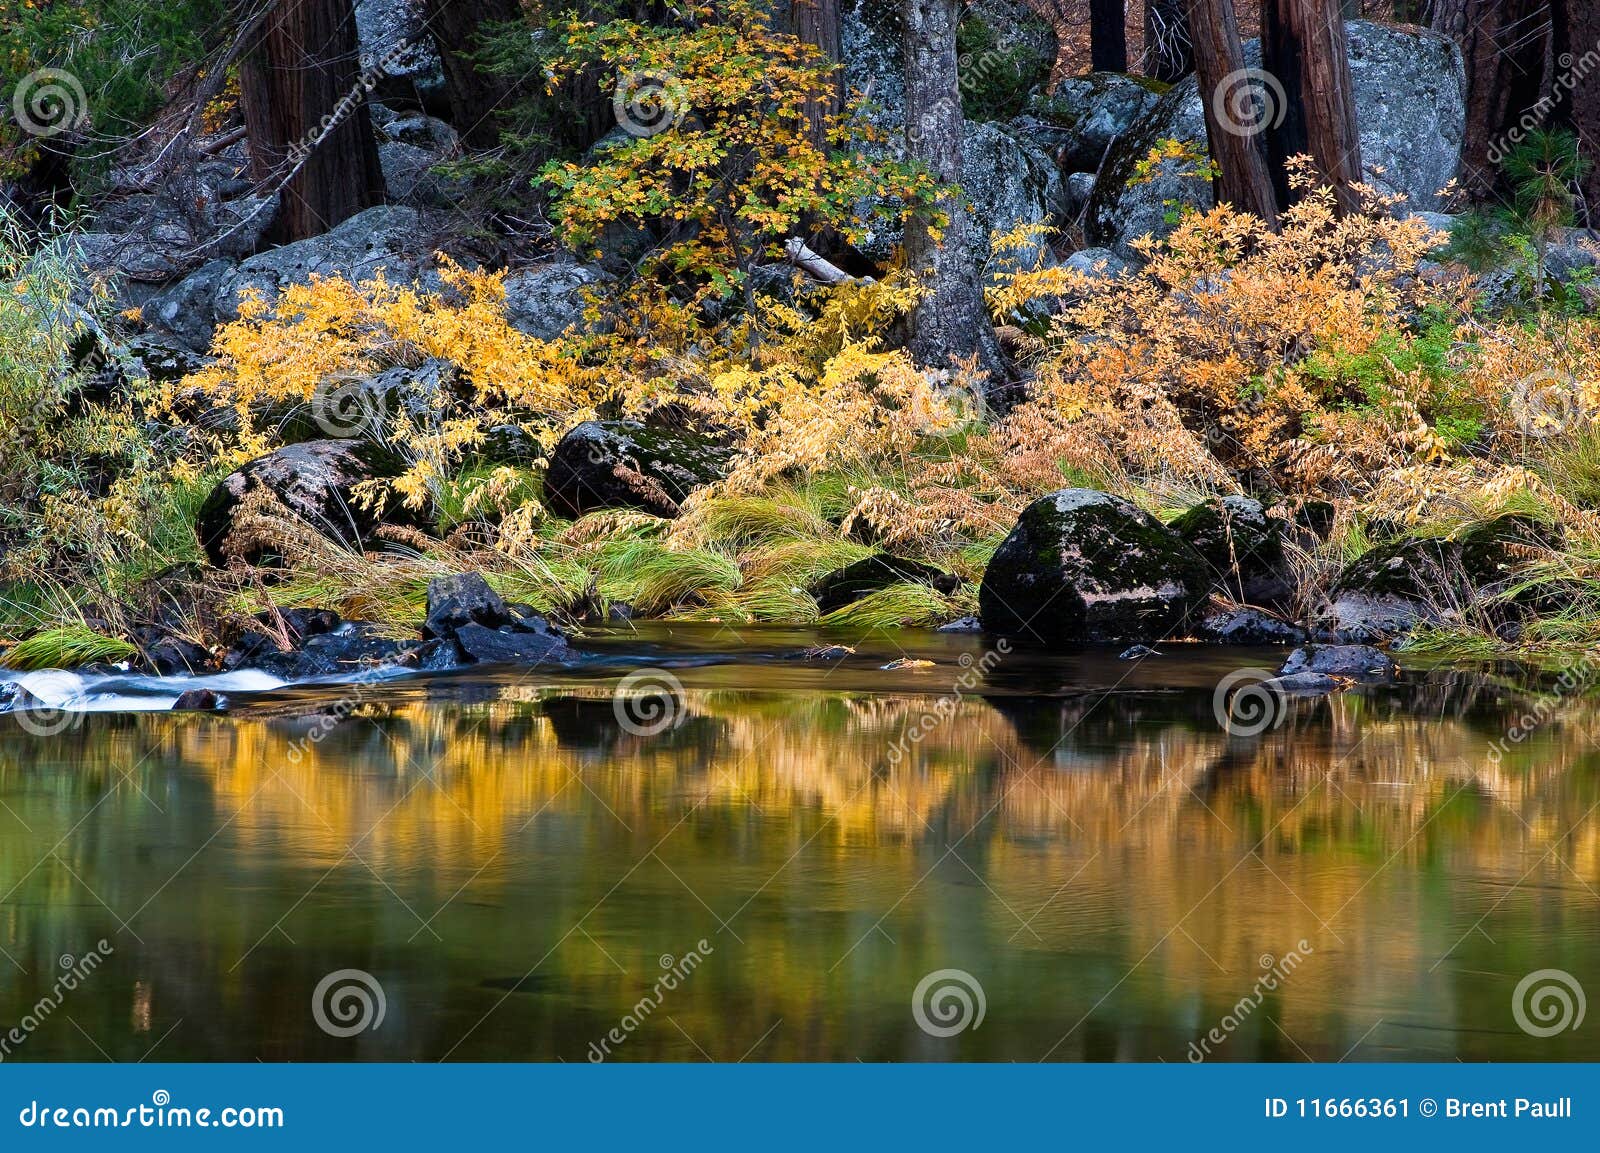 merced river in autumn